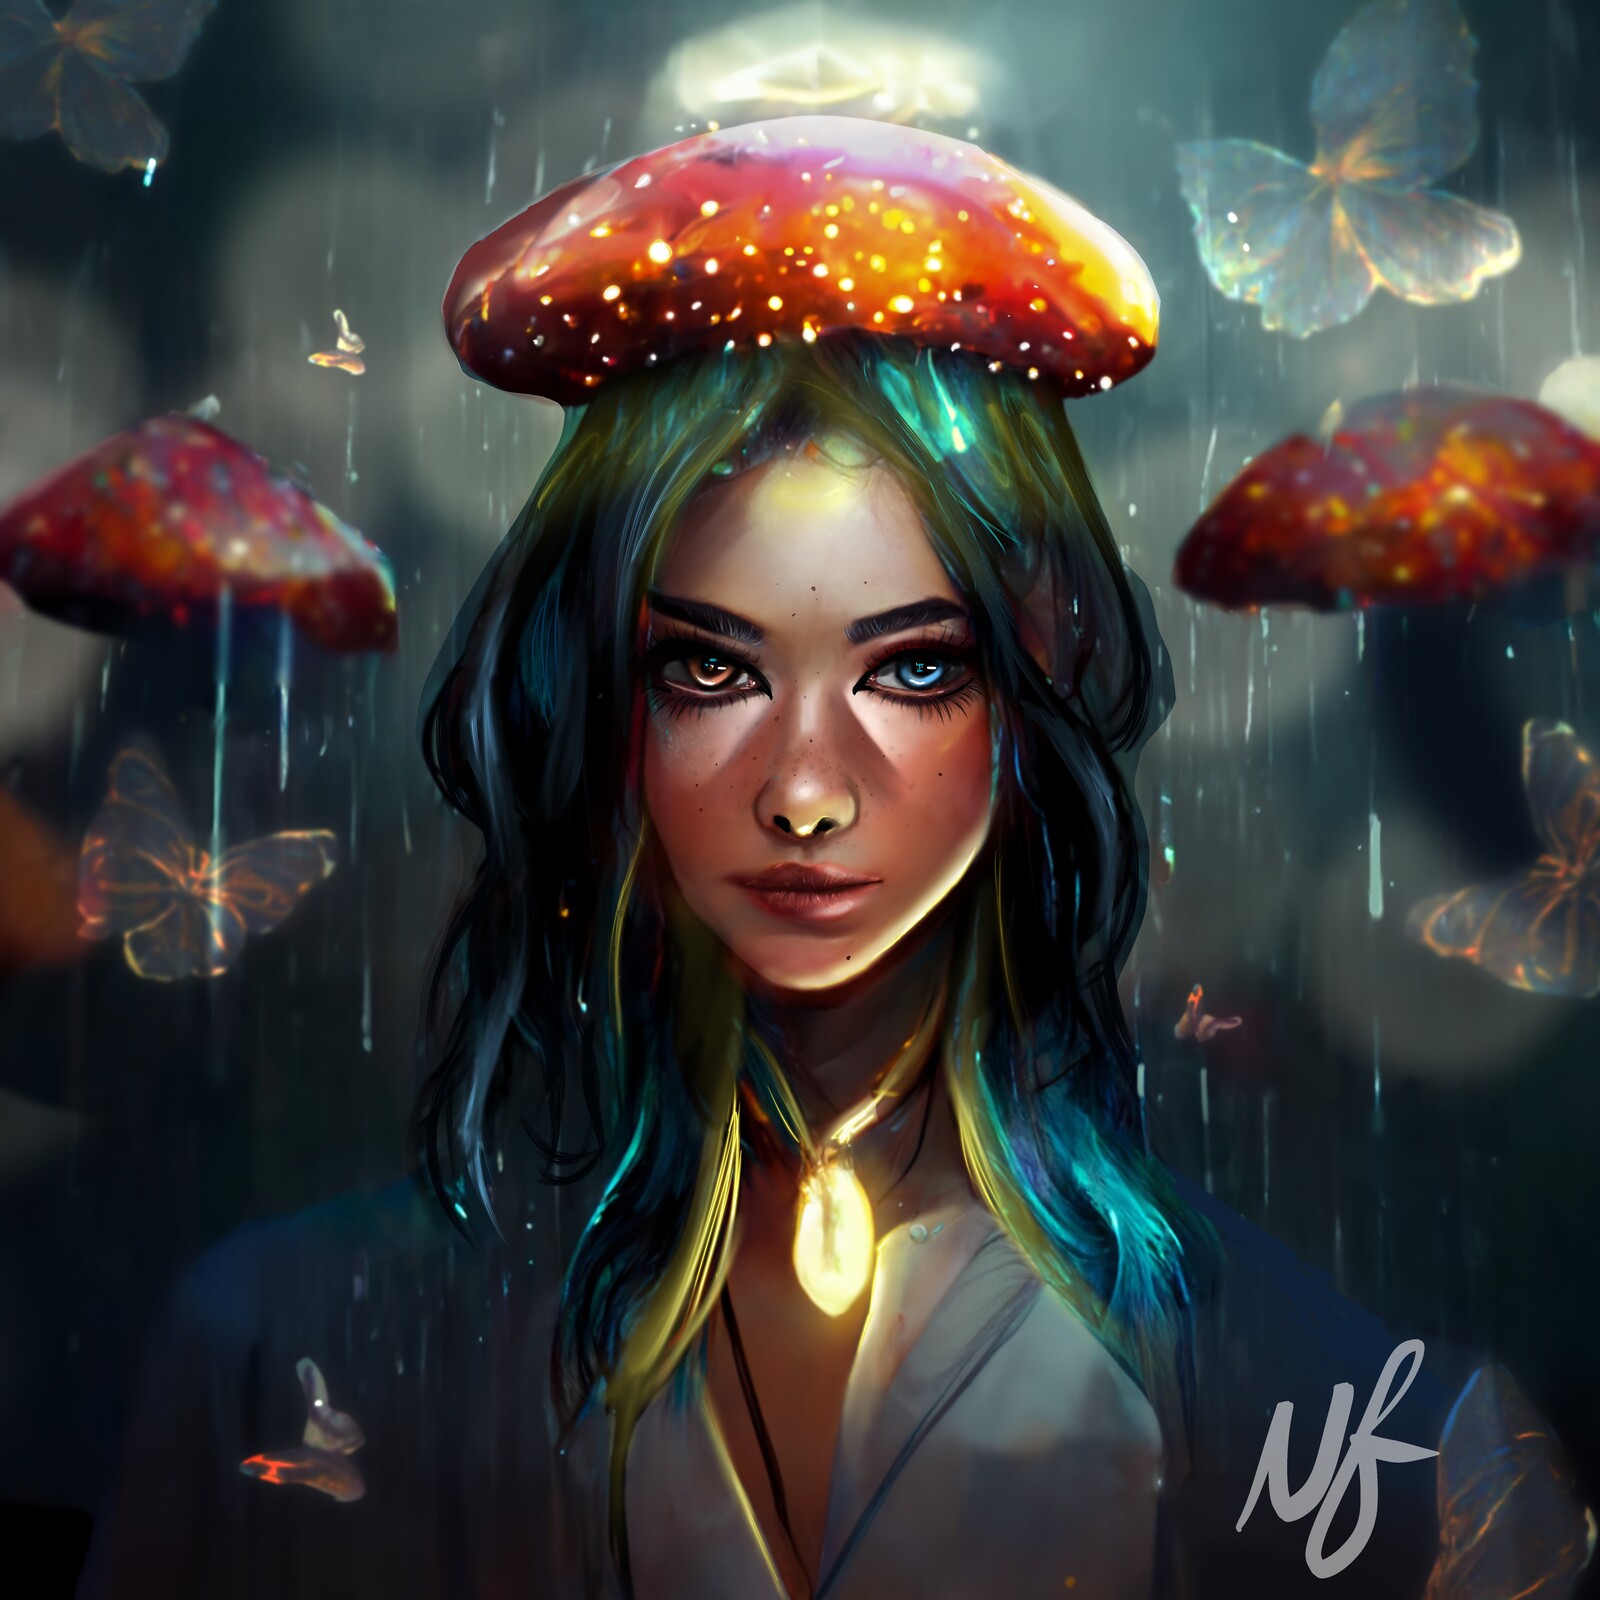 Mushroom Magic - New artwork